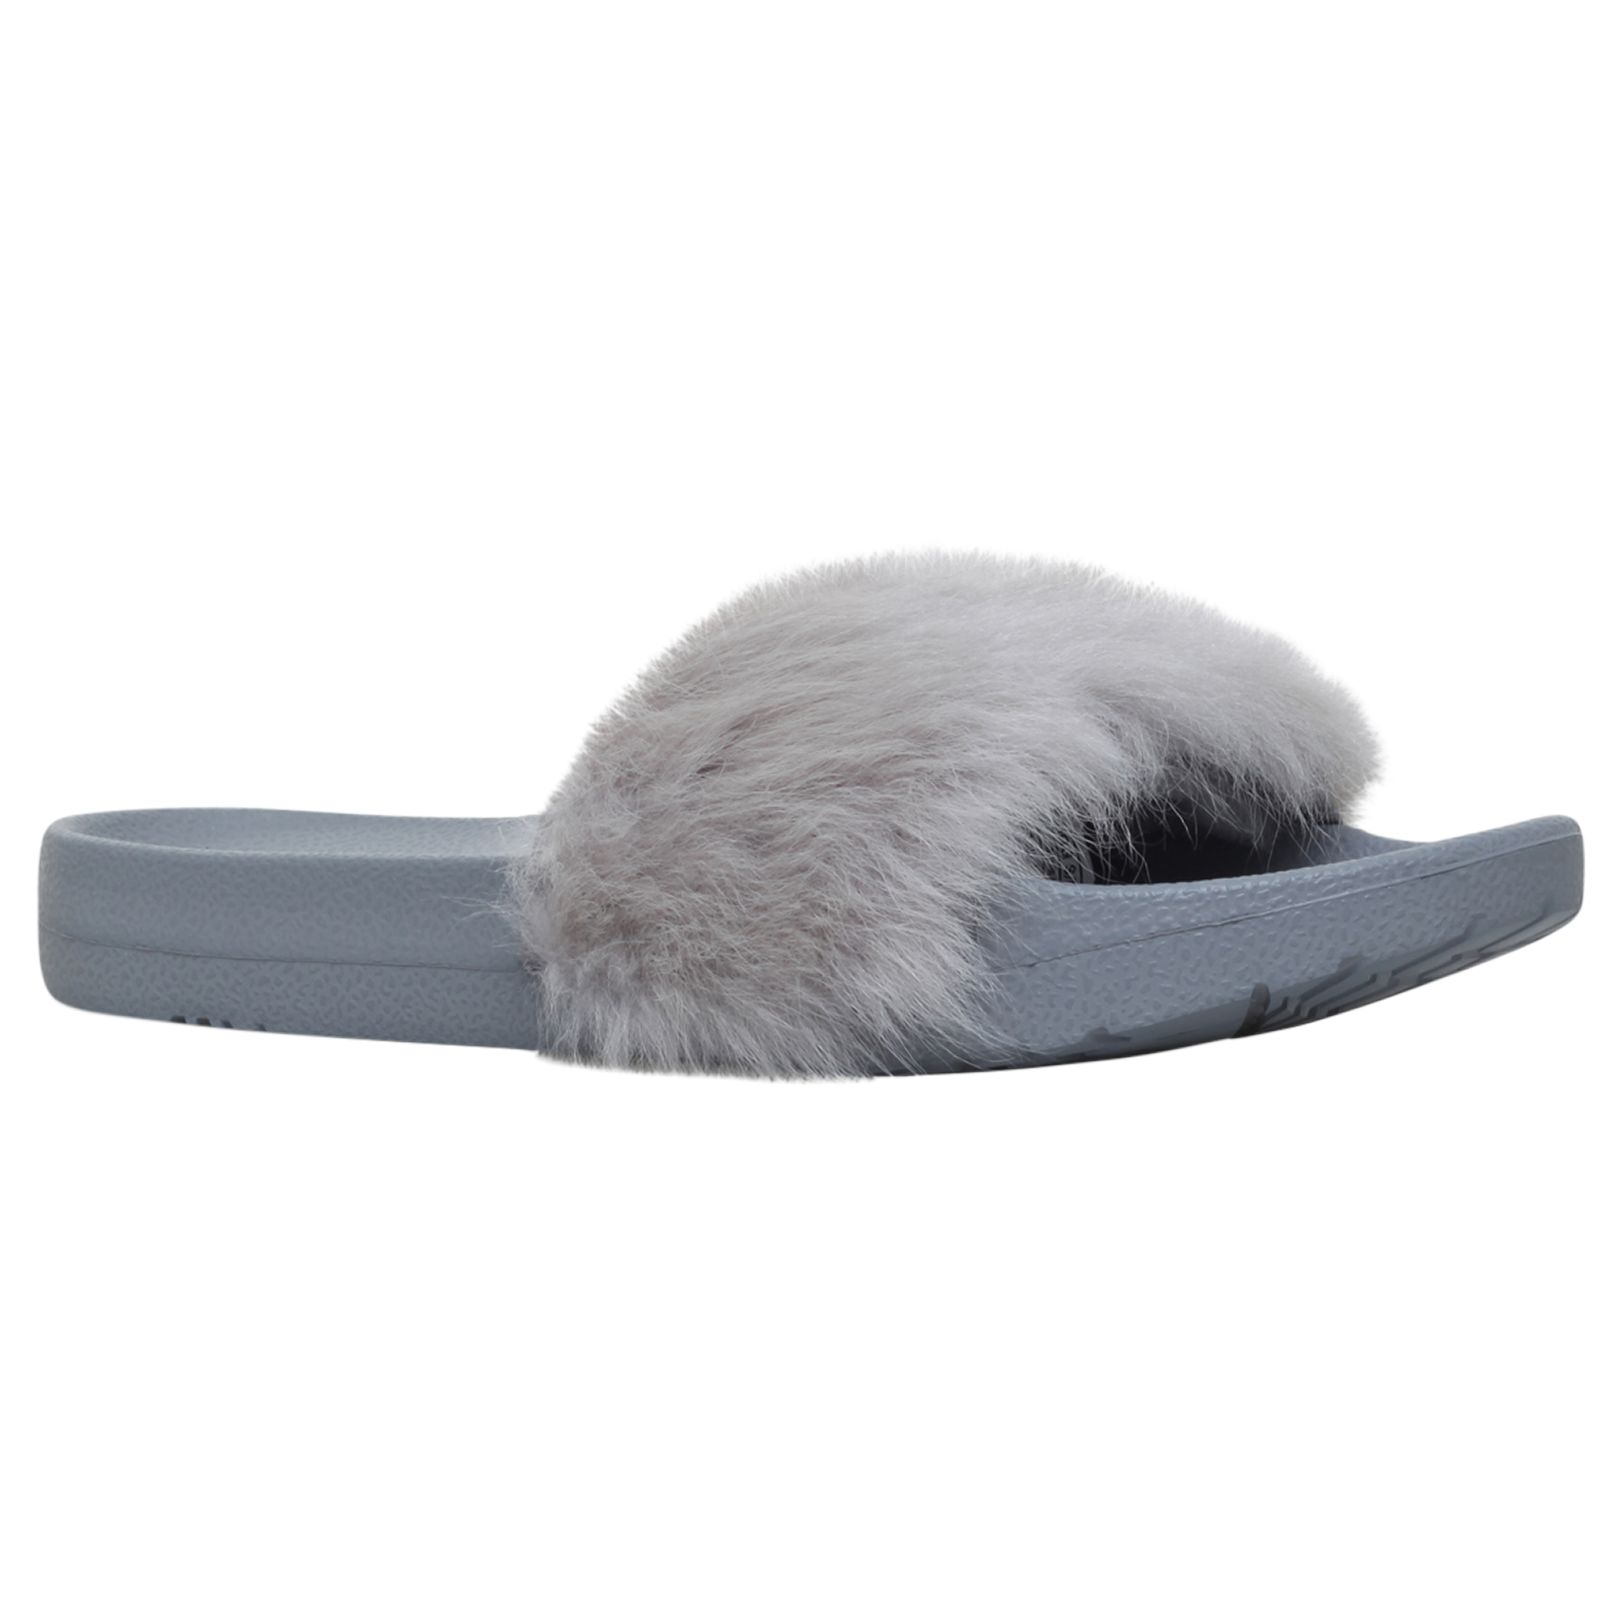 UGG Royale Sheepskin Slider Sandals, Grey, 6